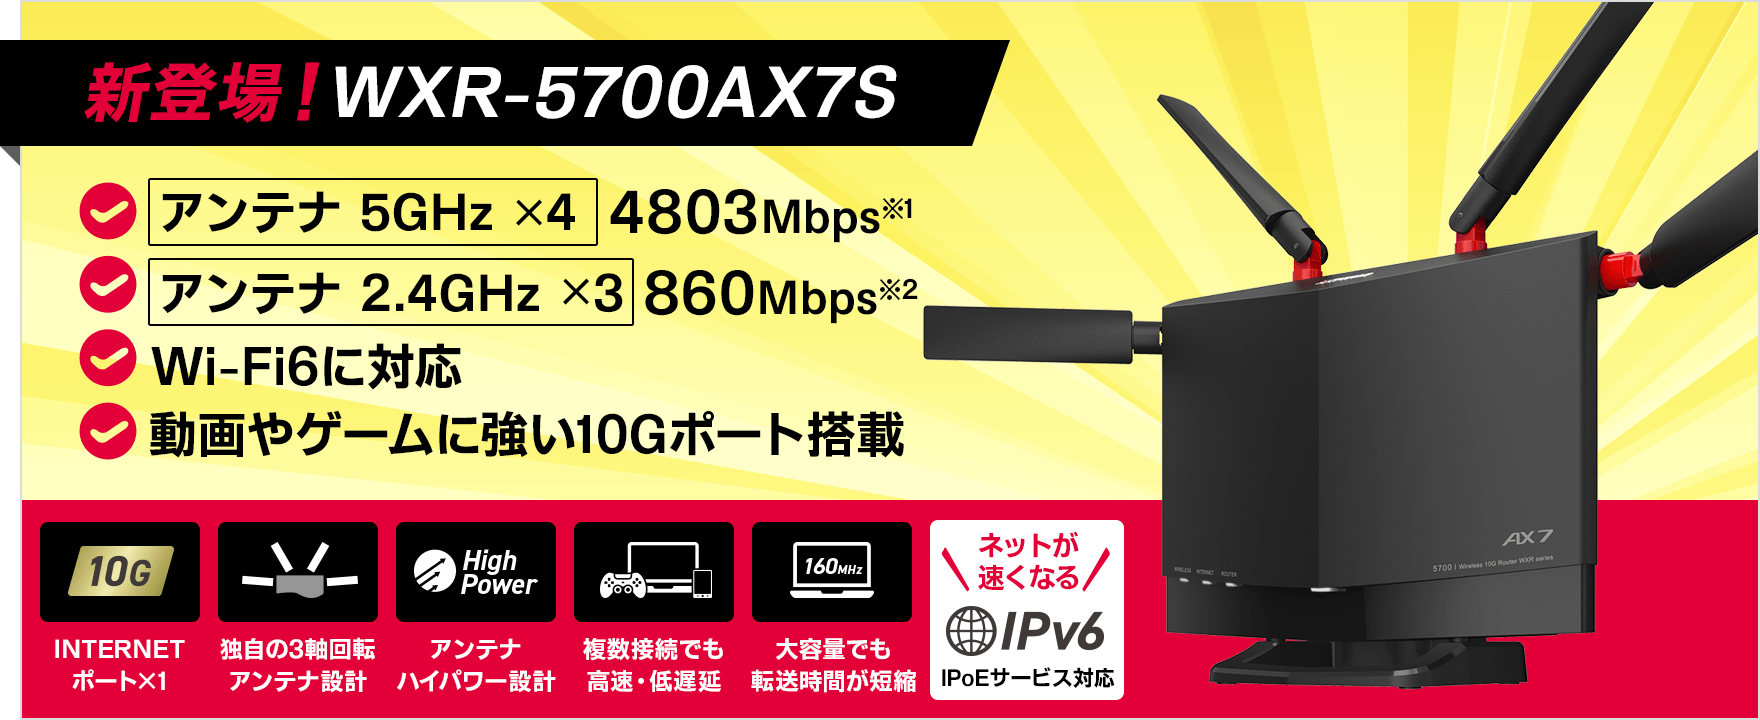 【新登場！WXR-5700AX7S】アンテナ 5GHz ×4 4803Mbps※1　アンテナ 2.4GHz ×3 860Mbps※2　Wi-Fi6に対応　動画やゲームに強い10Gポート搭載